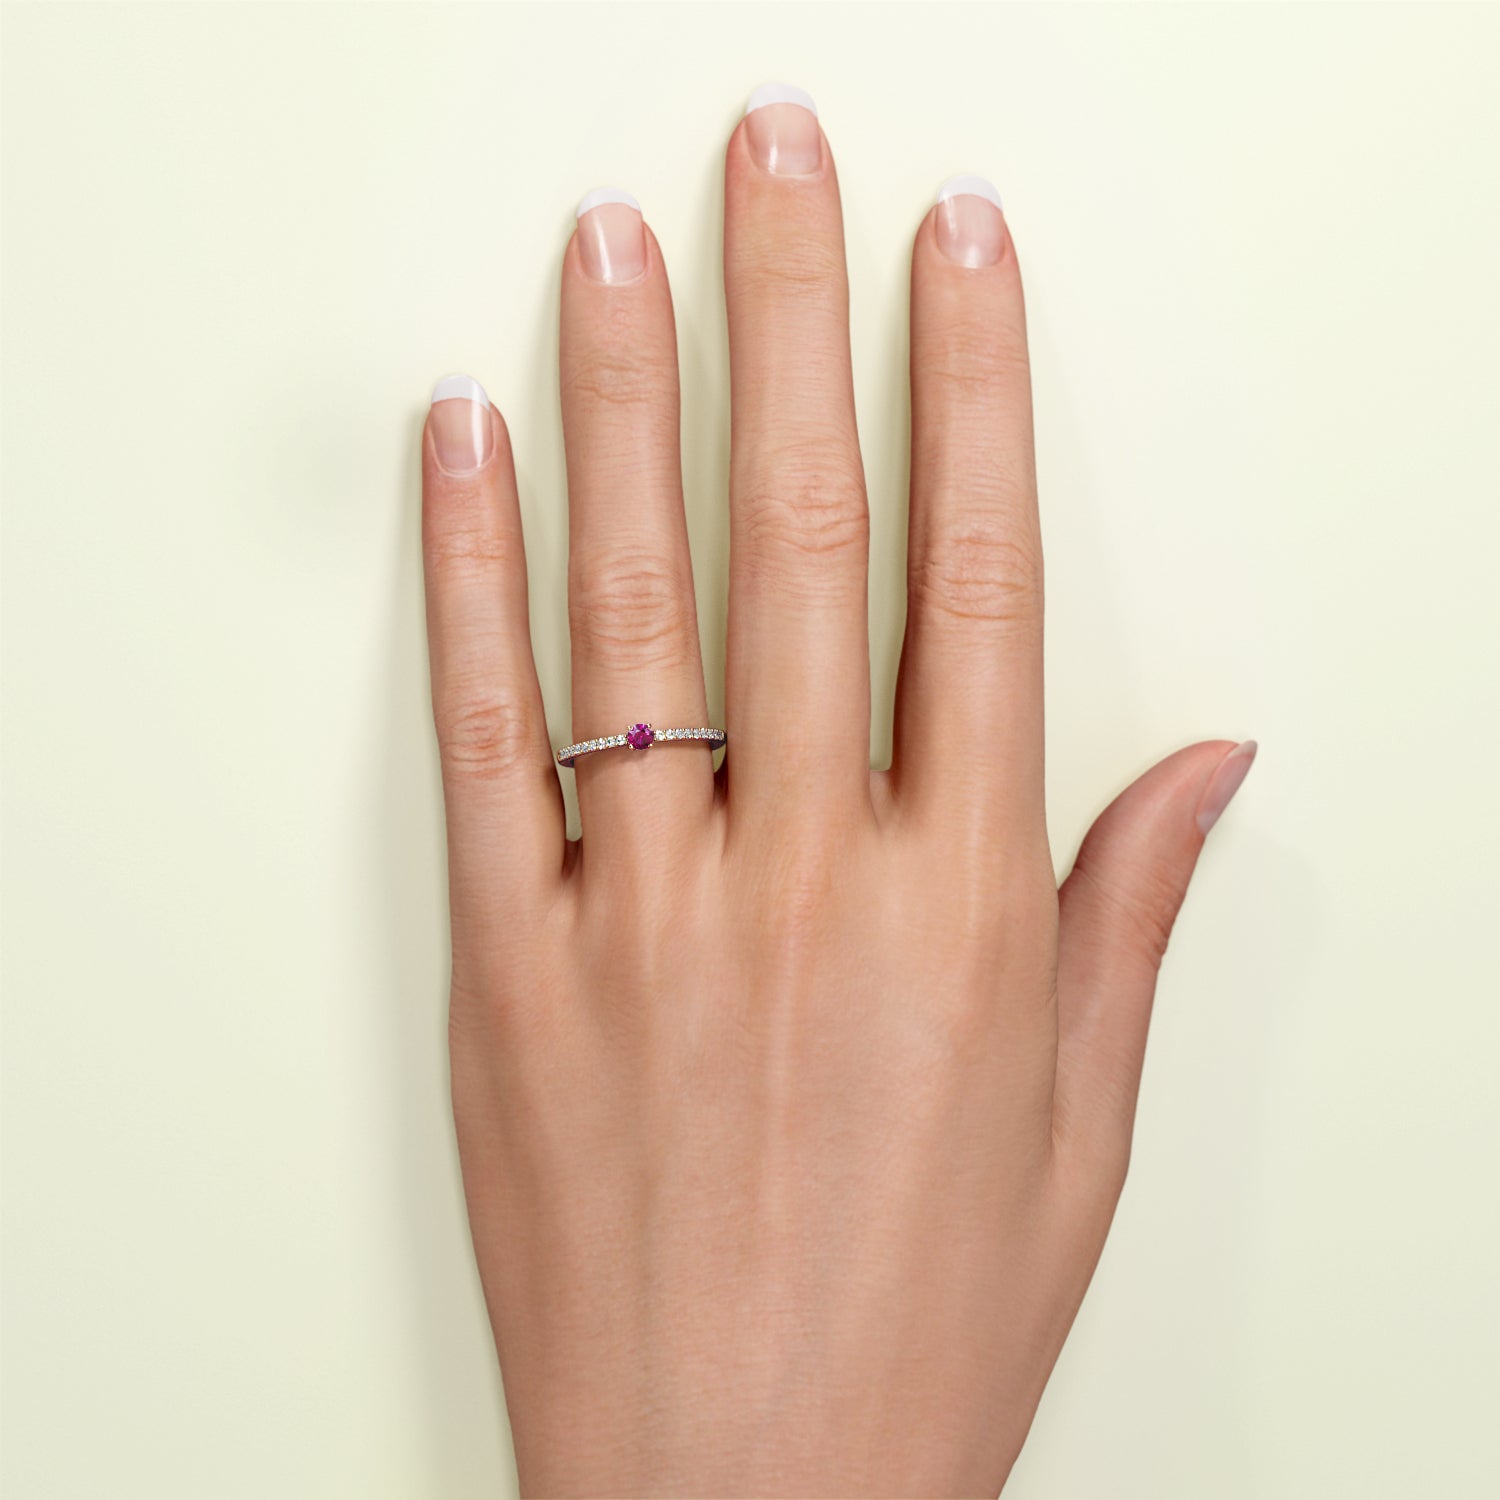 Birthstone Ring Jänner in Roségold mit rotem Granat und Diamanten, am Finger getragen. Von FENA daily Jewellery.